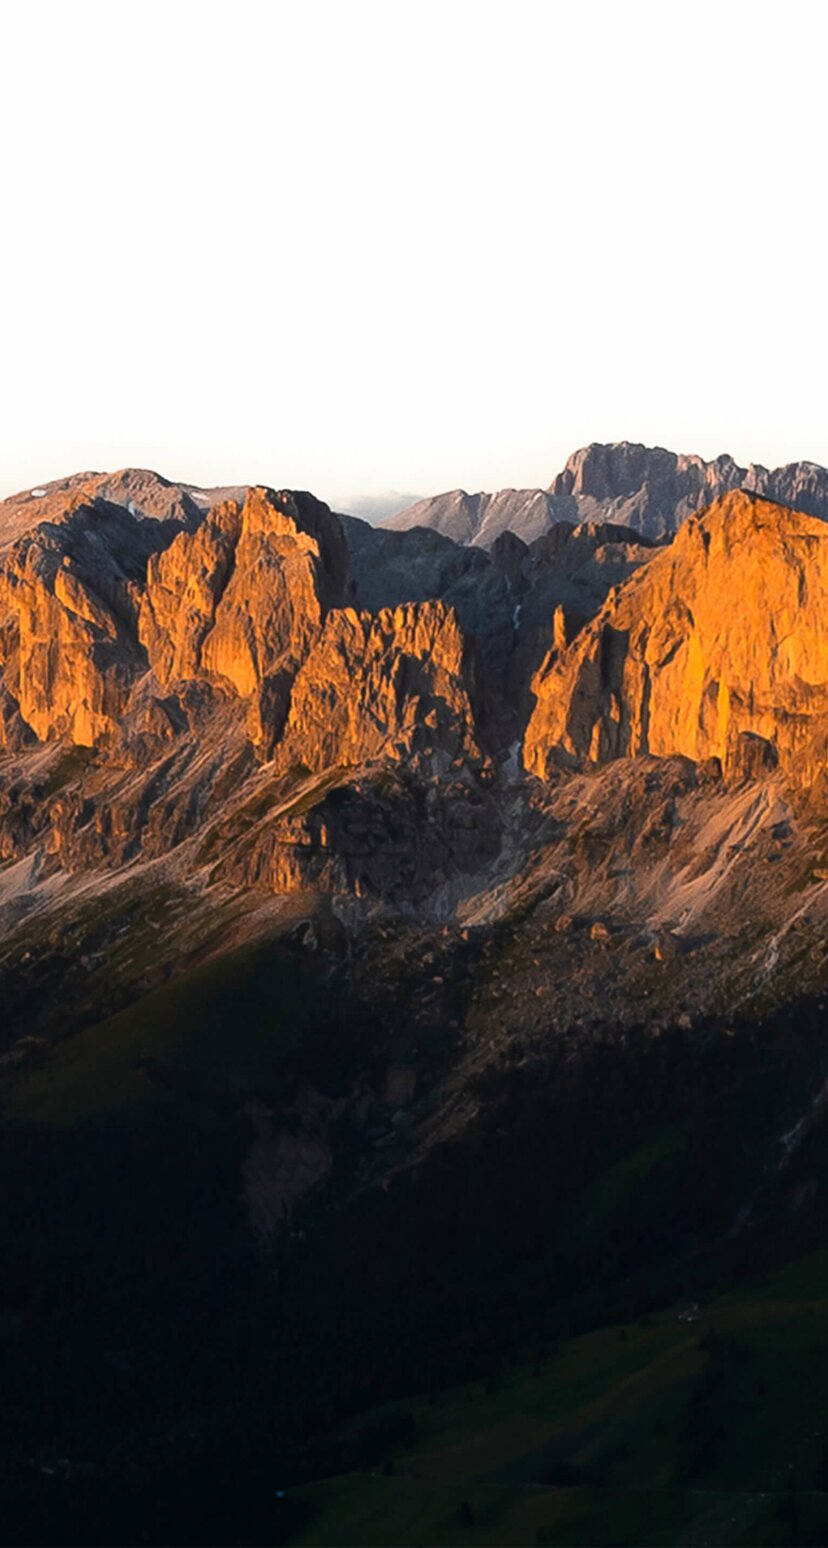 Catena montuosa illuminata di rosso - Catinaccio - Dolomiti | © Valentin Pardeller